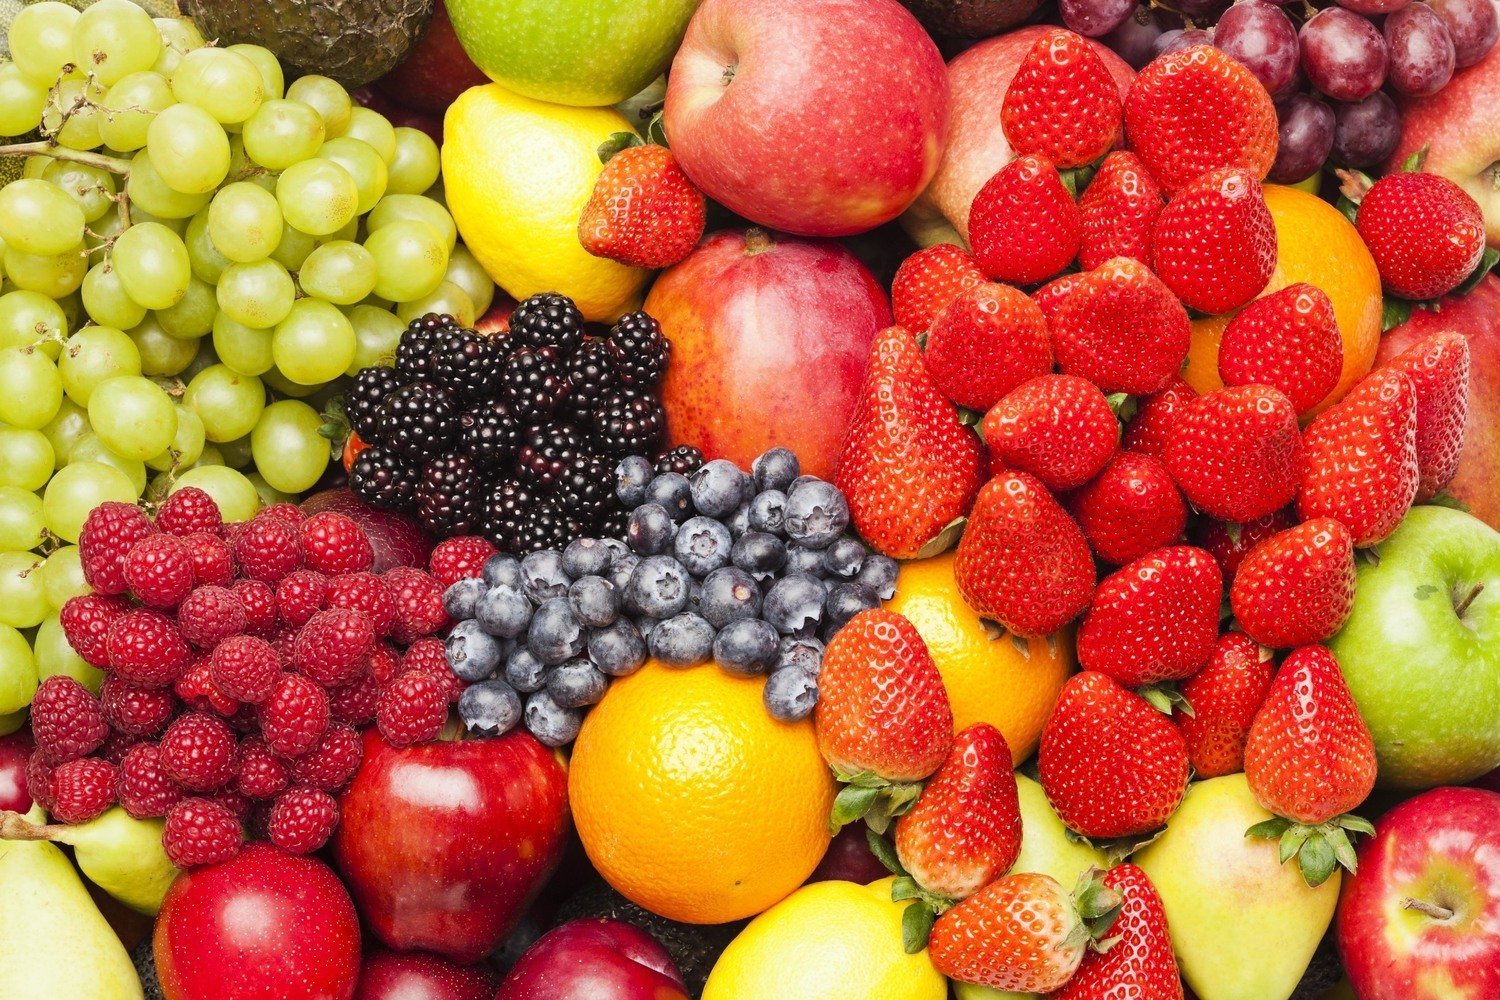 20 Low Carb Fruit - The Definitive List - PBCo.